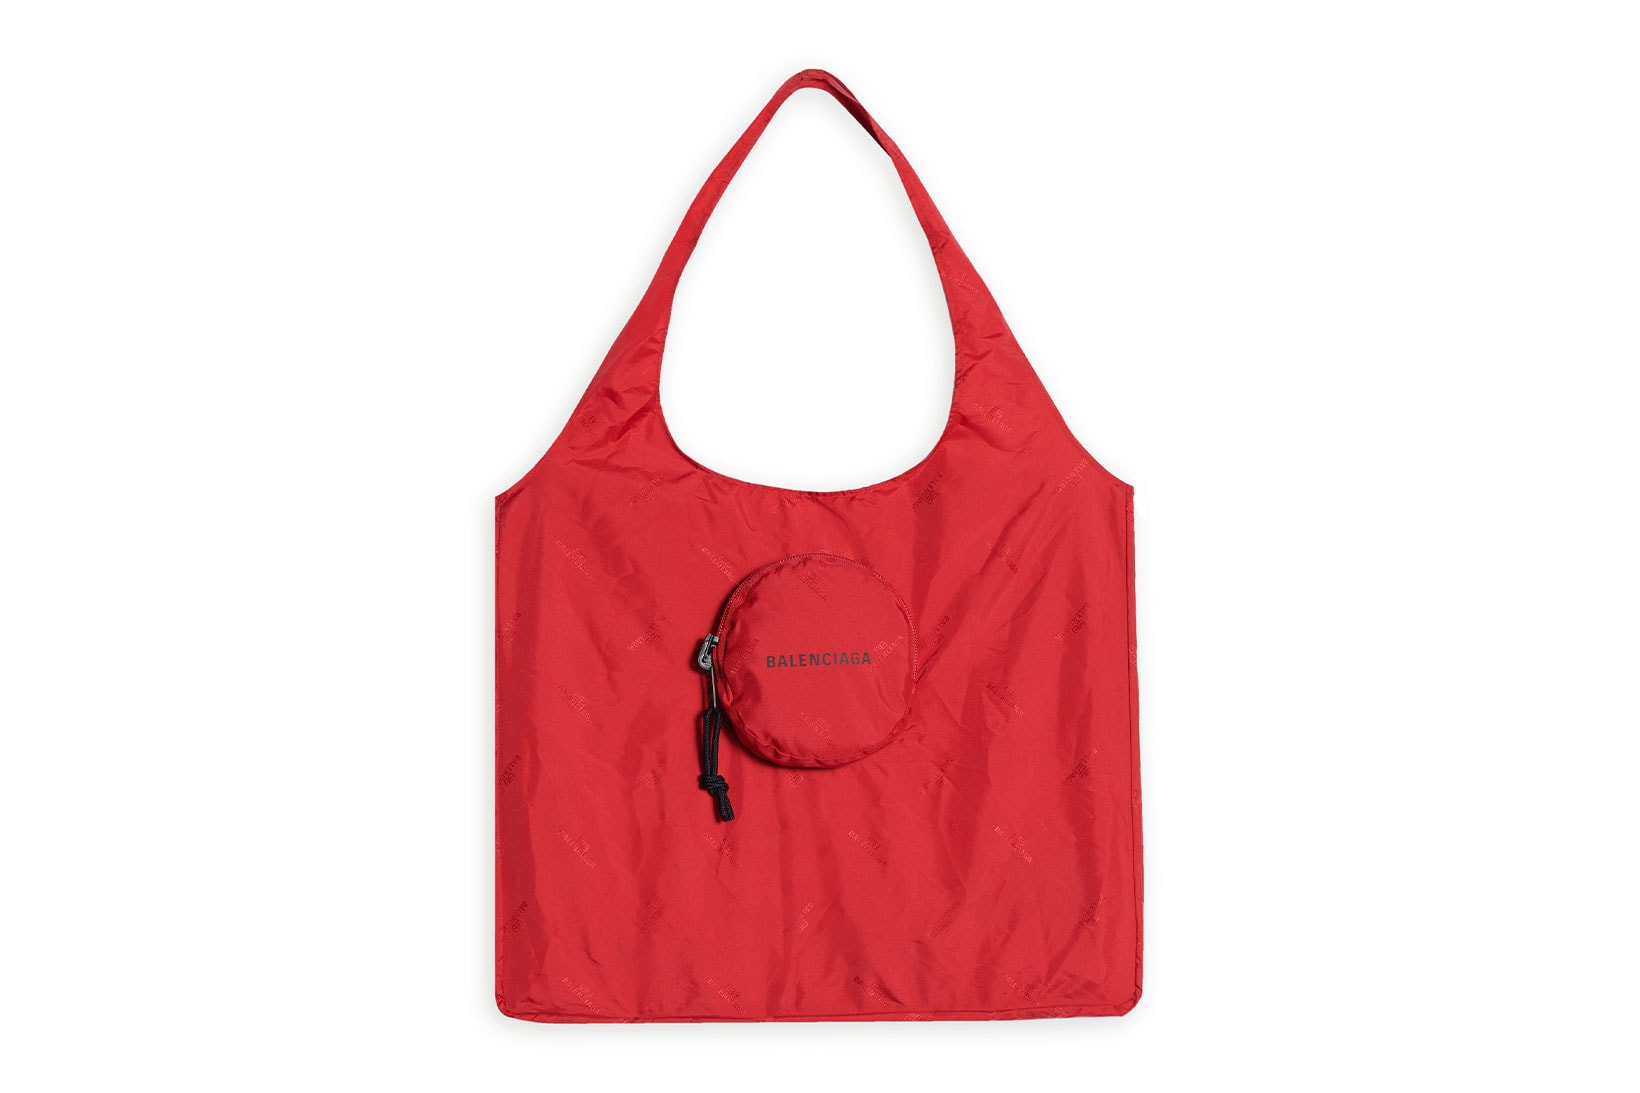 balenciaga logo grocery shopper bags reusable recycled red